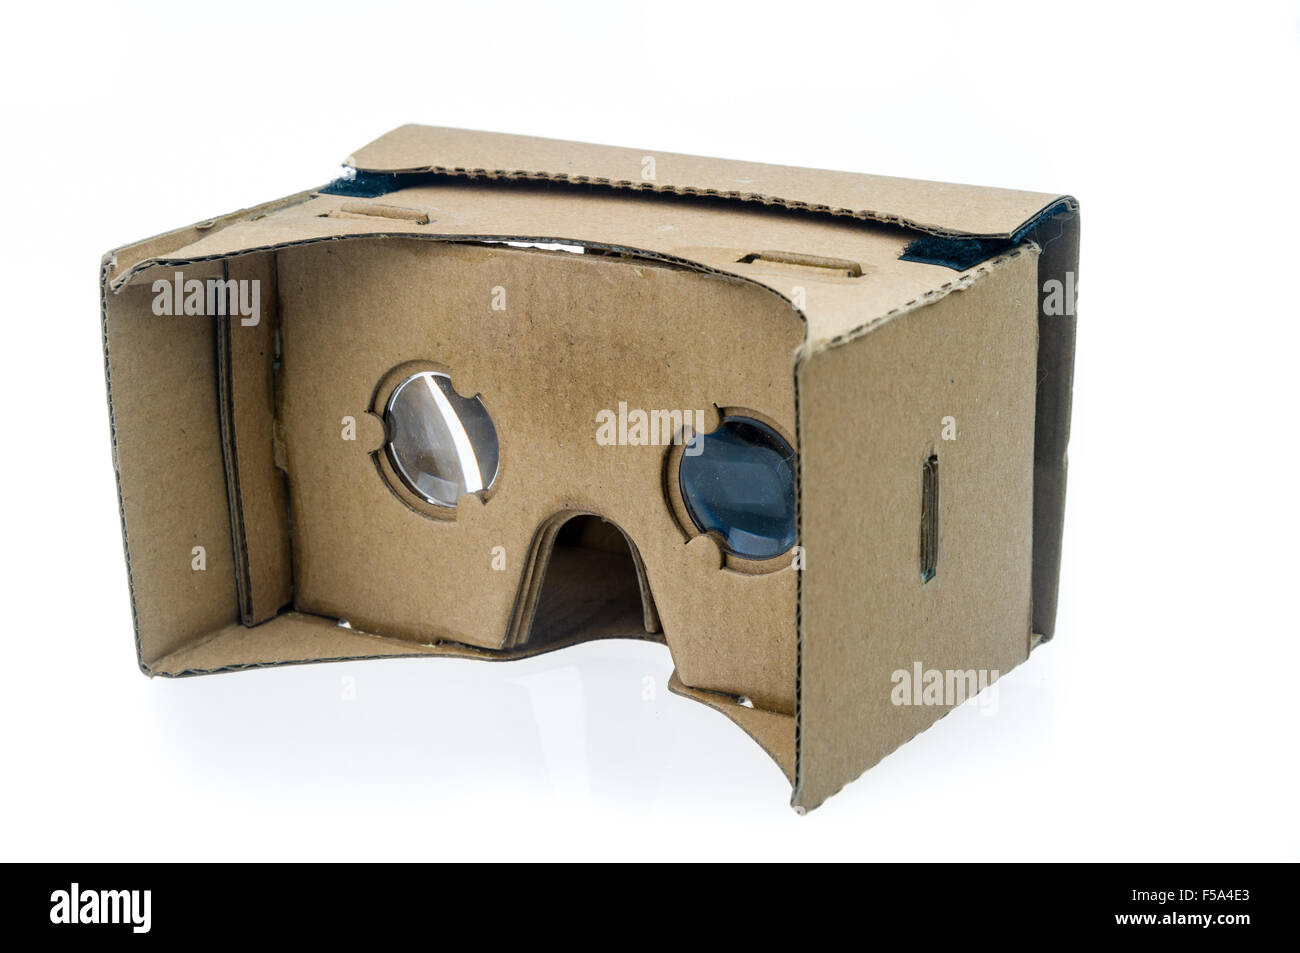 Google cartone, un 3D la realtà virtuale accessorio per smartphone Foto Stock